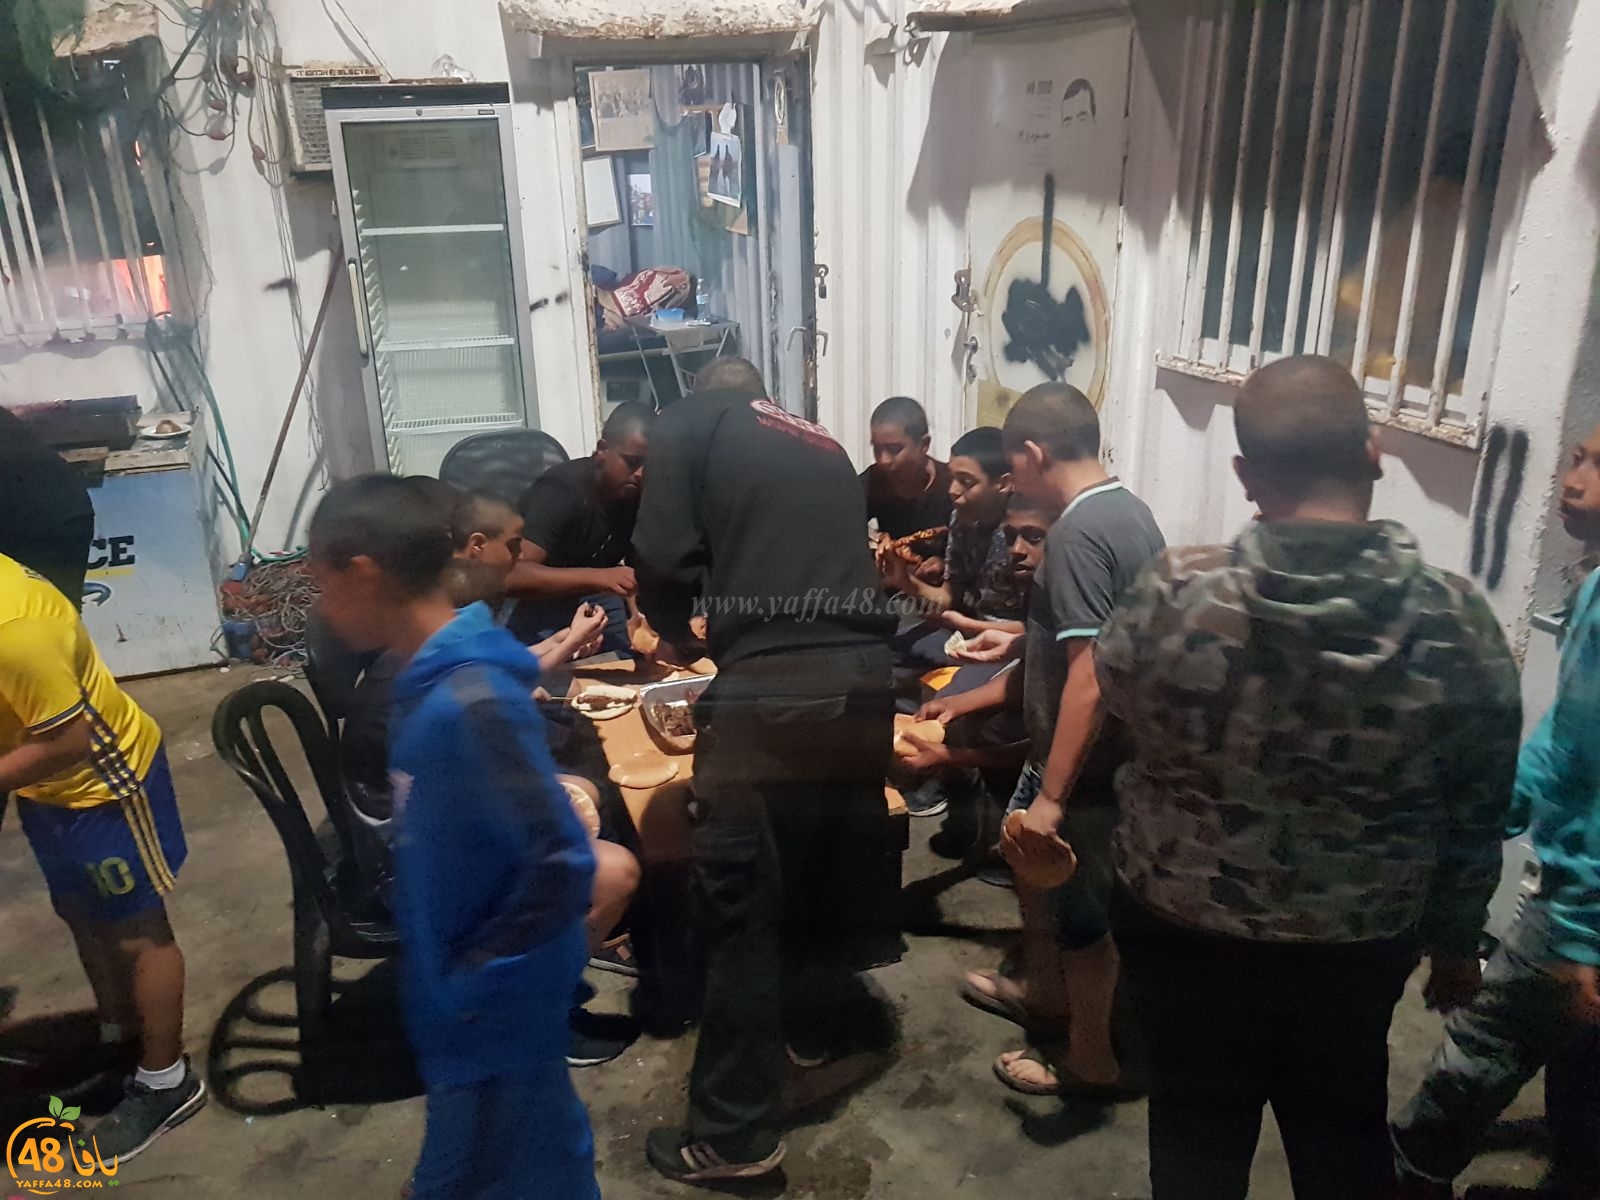  صور: الصيادون في ميناء يافا يستضيفون الأطفال على وجبة عشاء  ضمن مشروع شبيبة في خطر